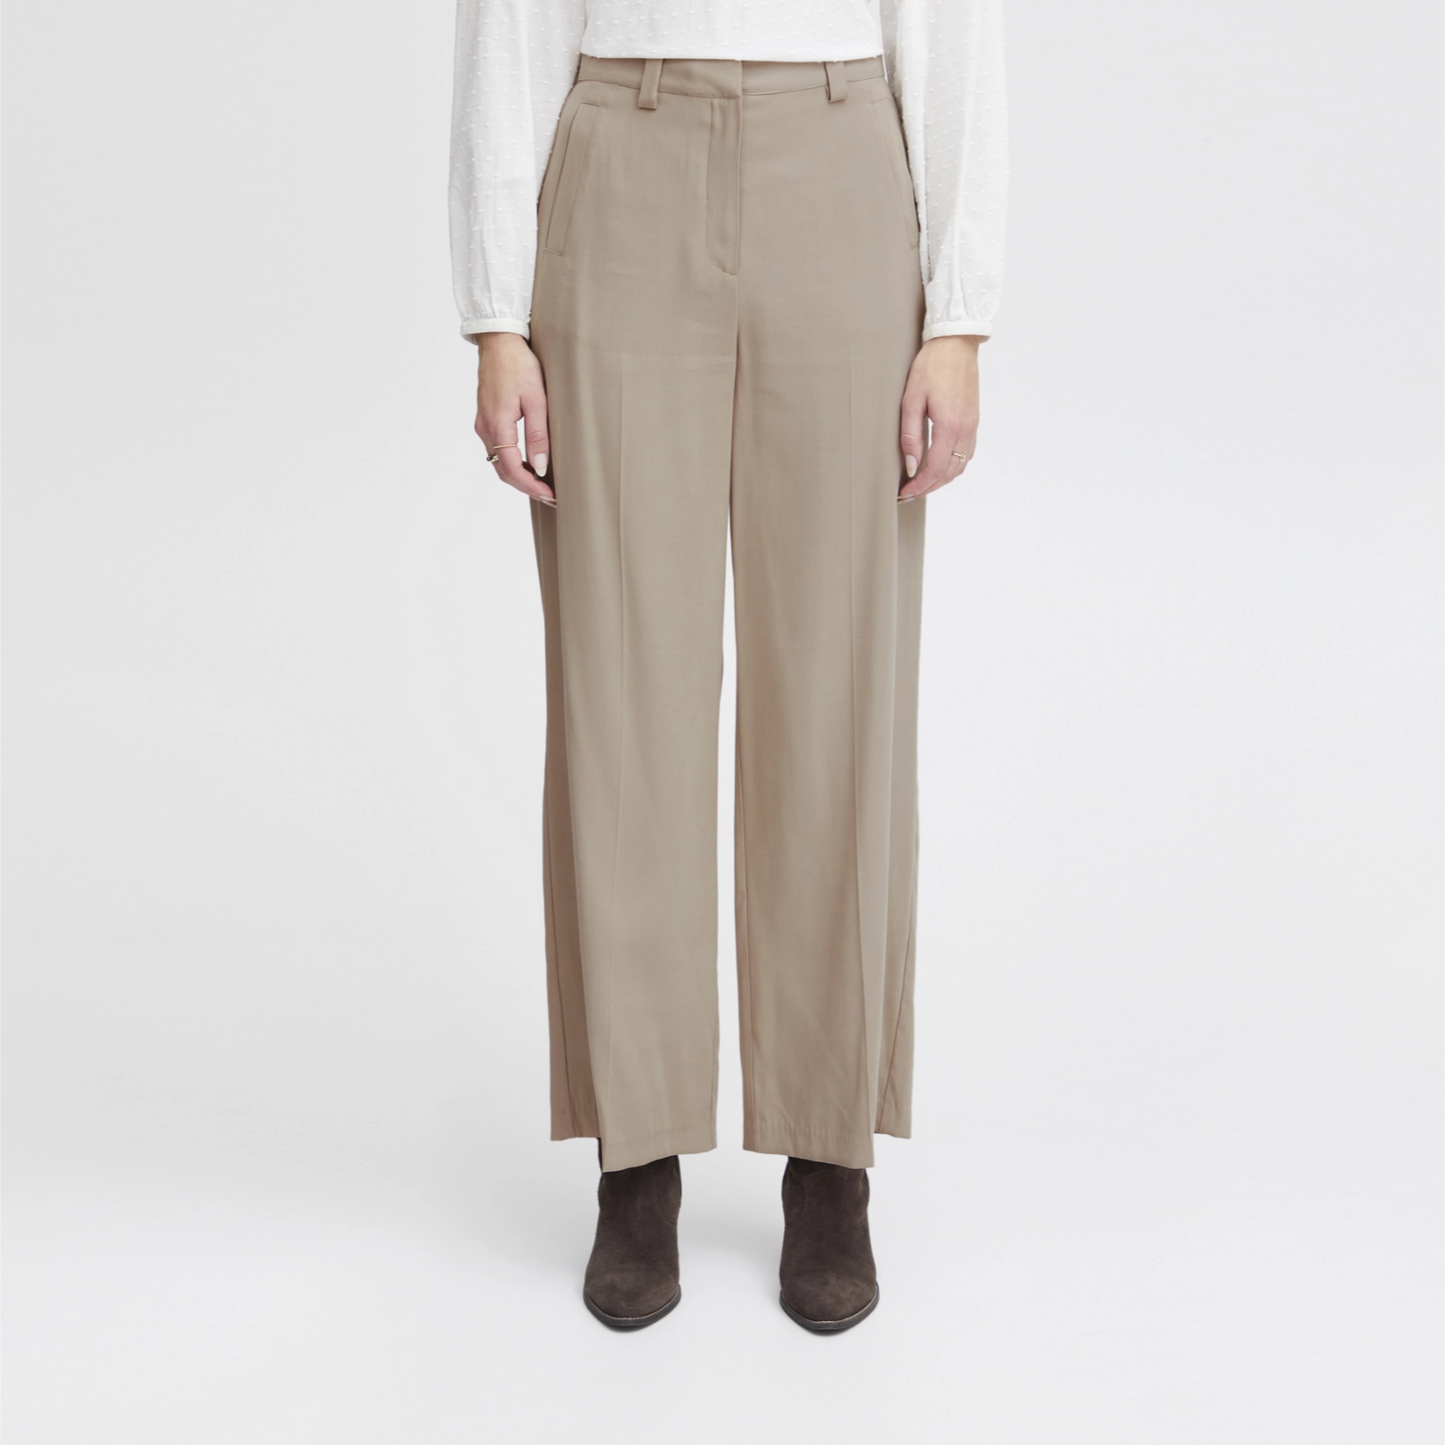 Irleono bukser fra Atelier Reve i Cobblestone (model)